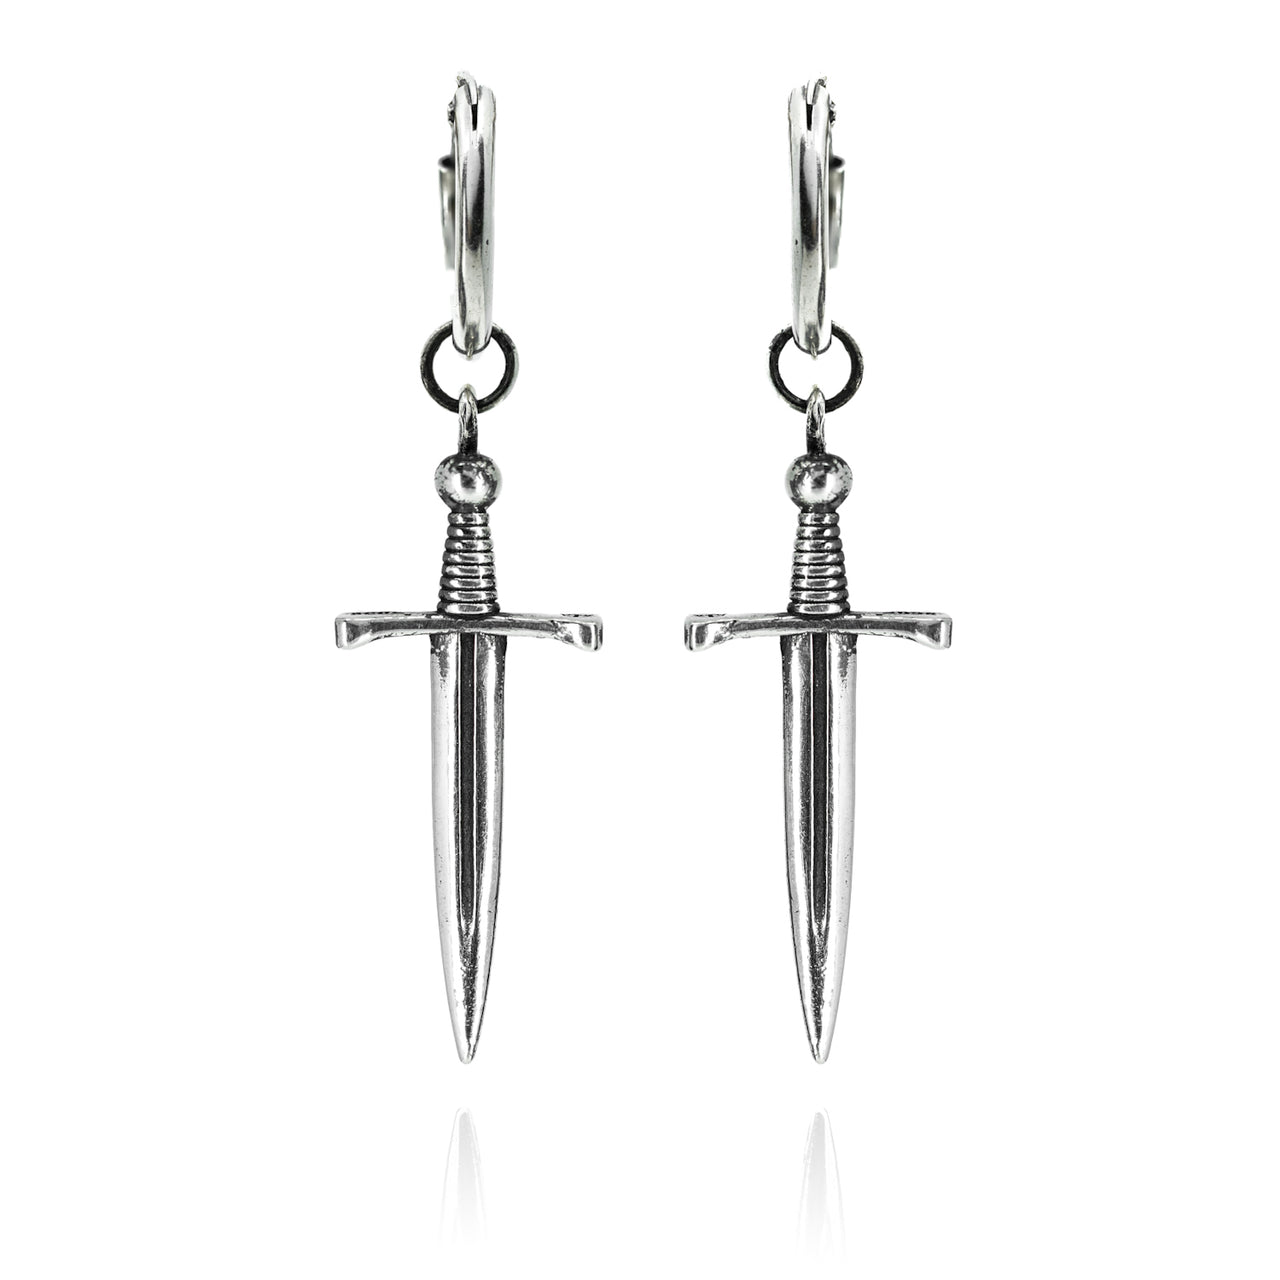 Oathkeeper Earrings - Sterling Silver Sword Earrings - Gothic Jewellery